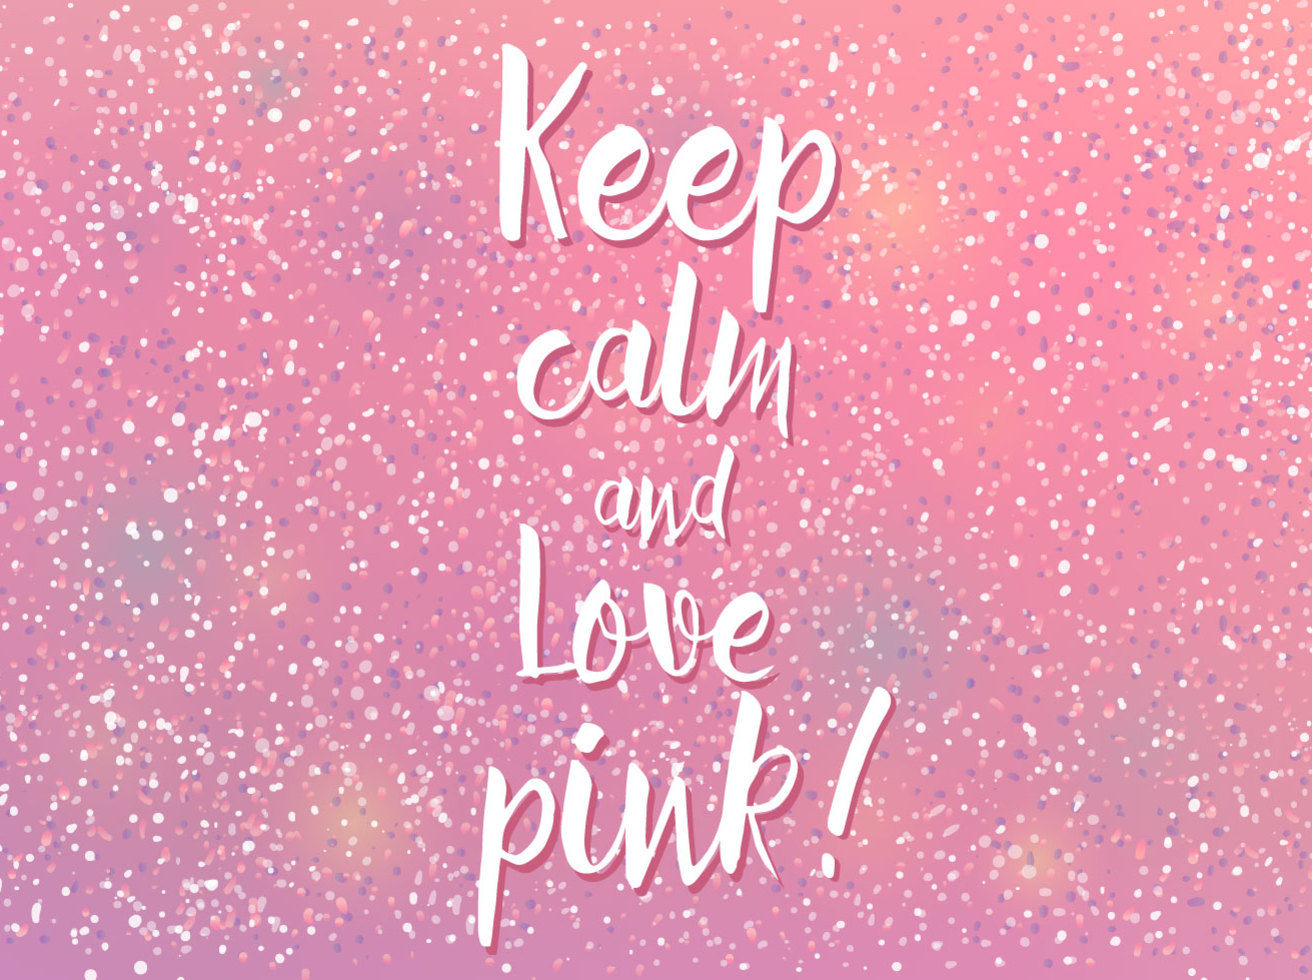 keep calm wallpaper pink